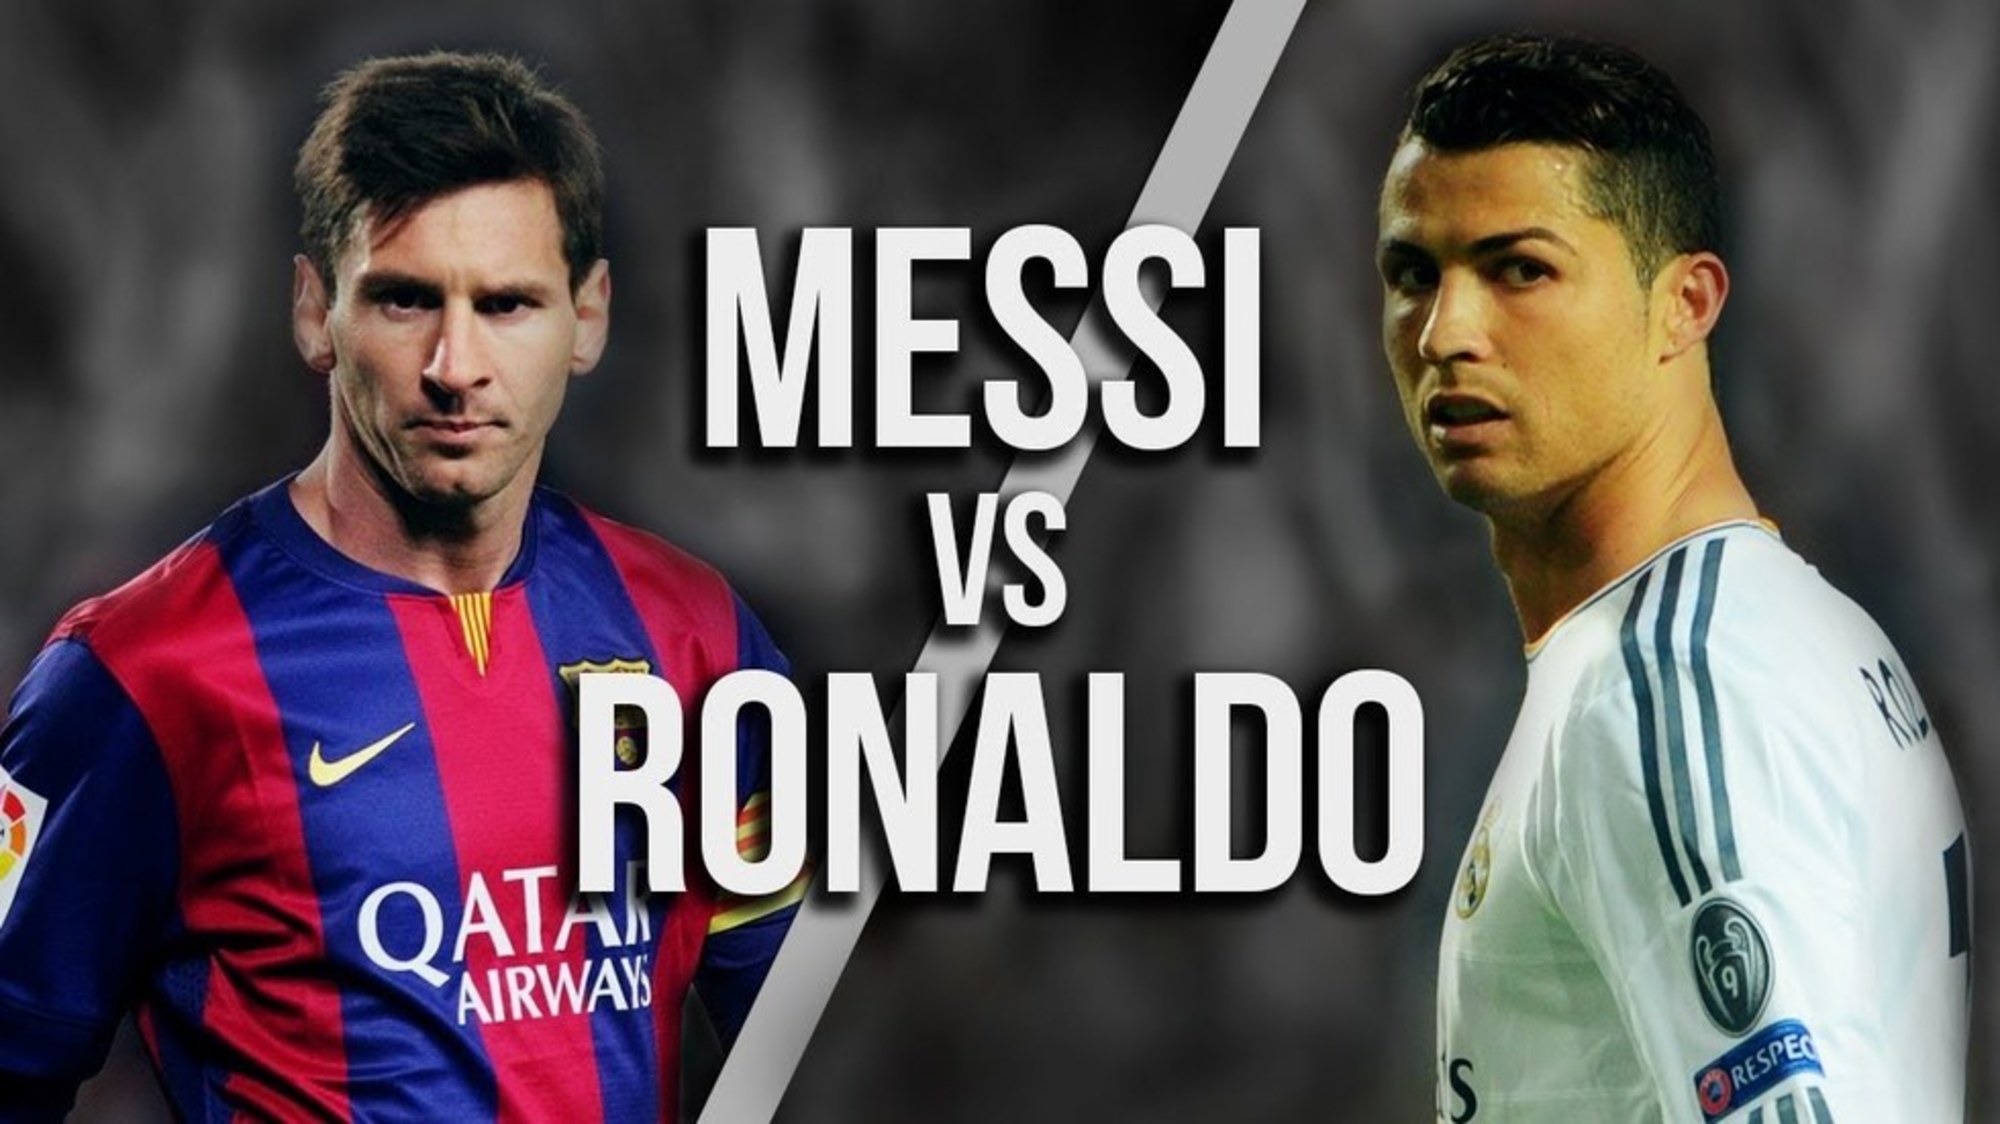 Messi Ronaldo Vergleich